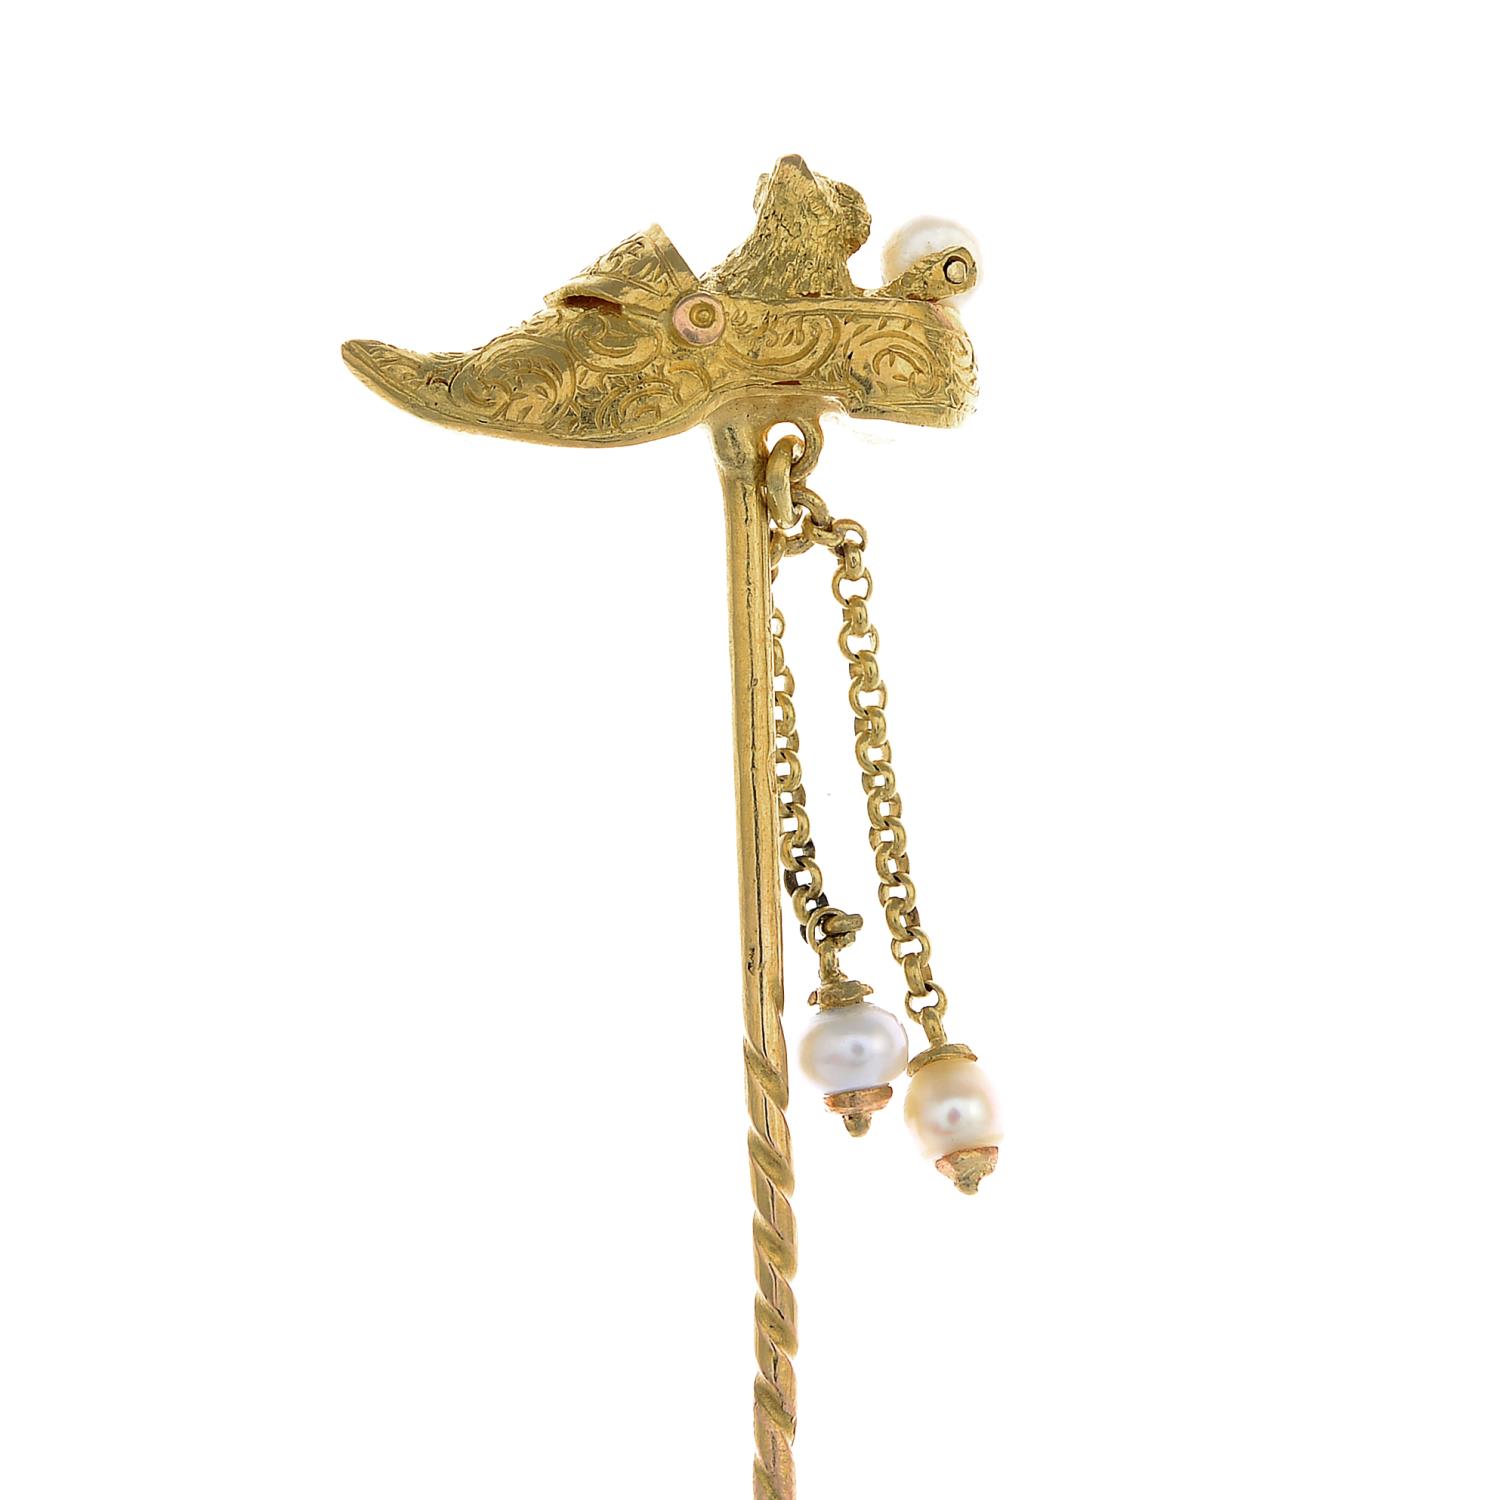 An 18ct gold cat in a clog cultured pearl stickpin.